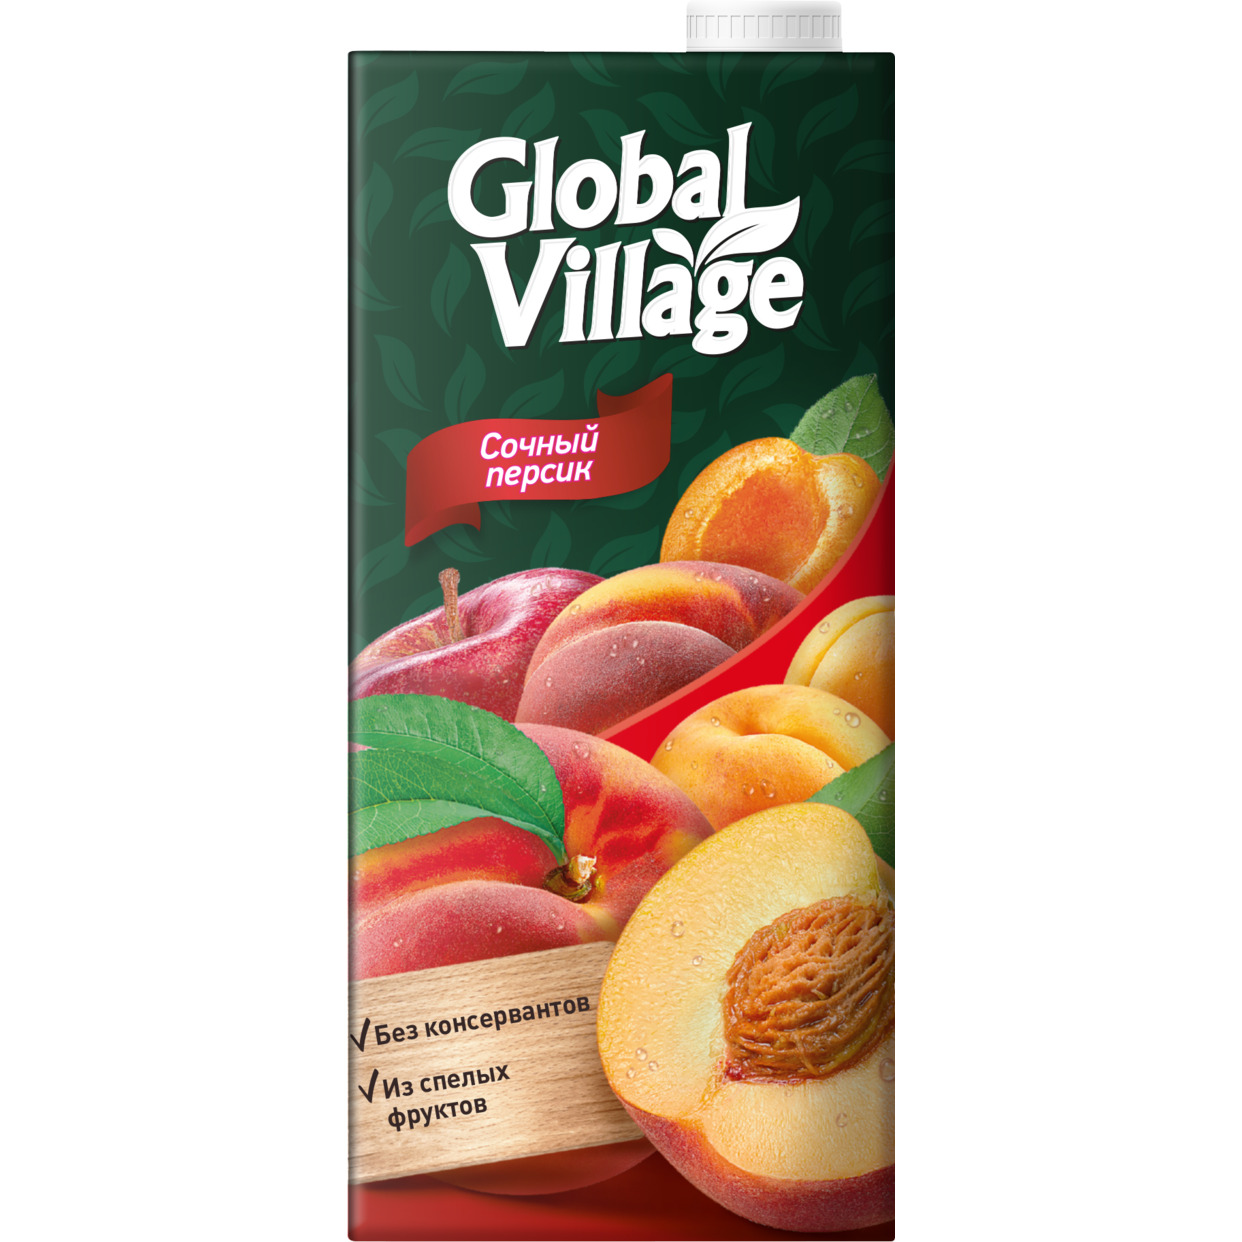 Сокосодержащий напиток из персиков, яблок и абрикосов ТМ «Global Village» для детей дошкольного и школьного возраста (от 3 лет) 0,9 5 л.